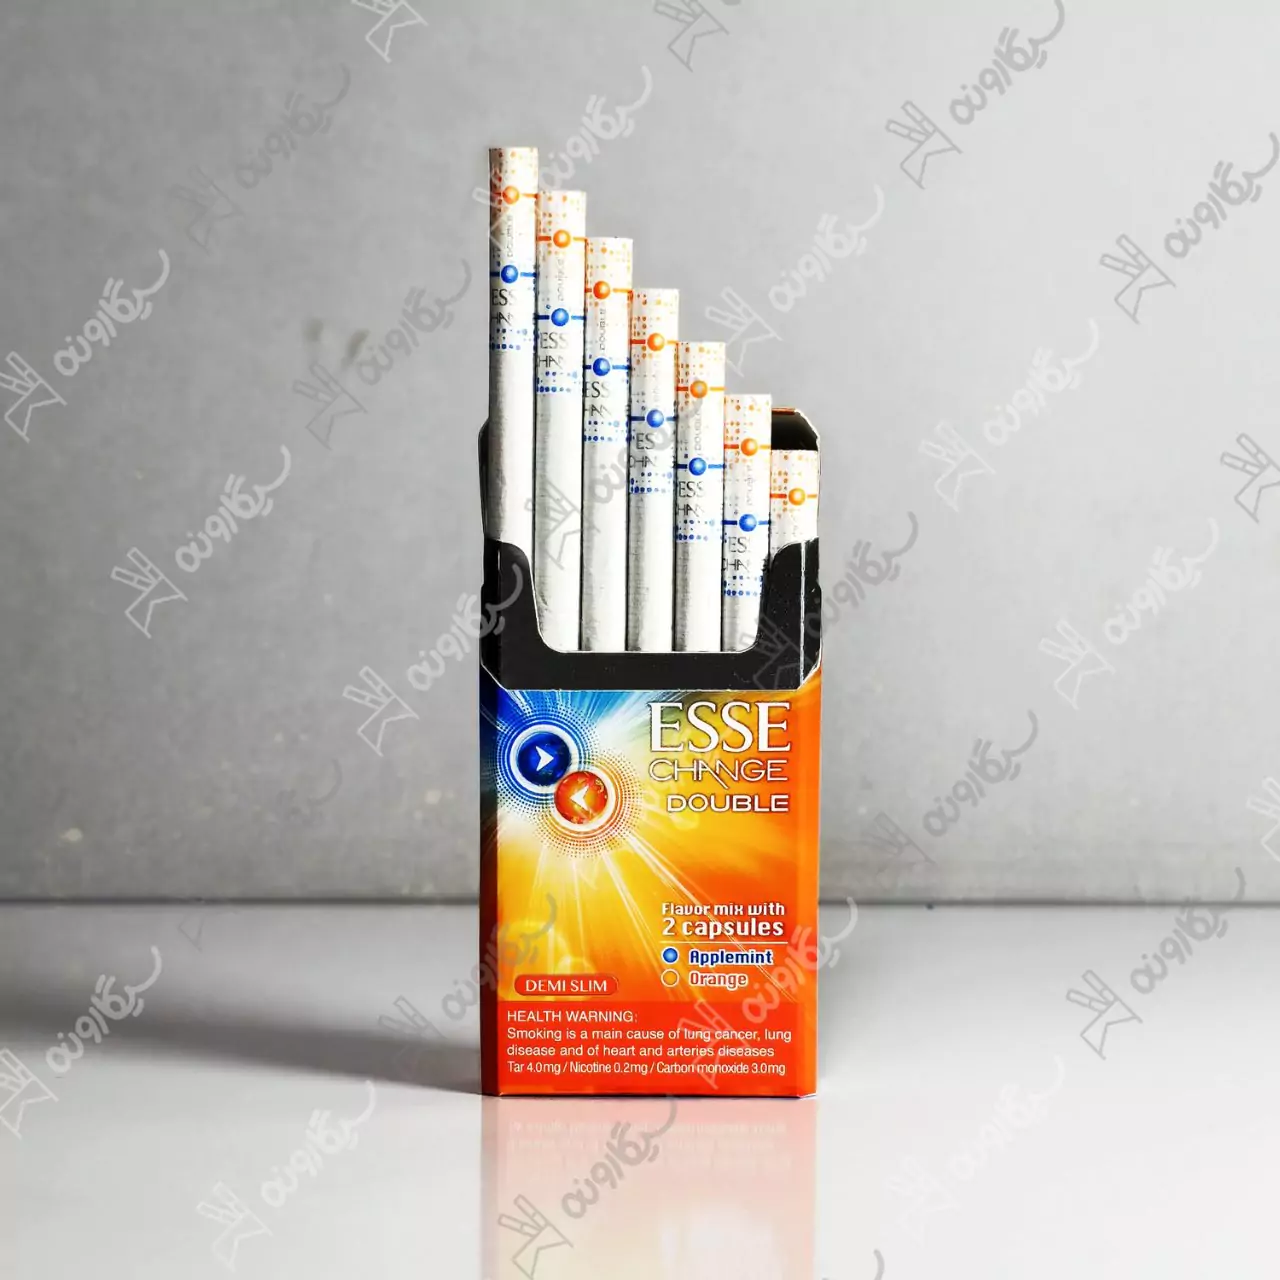 خرید سیگار اسی چنج دابل طعم پرتقال سیب نعنا کامپکت - esse change double orange applemint compact cigarette